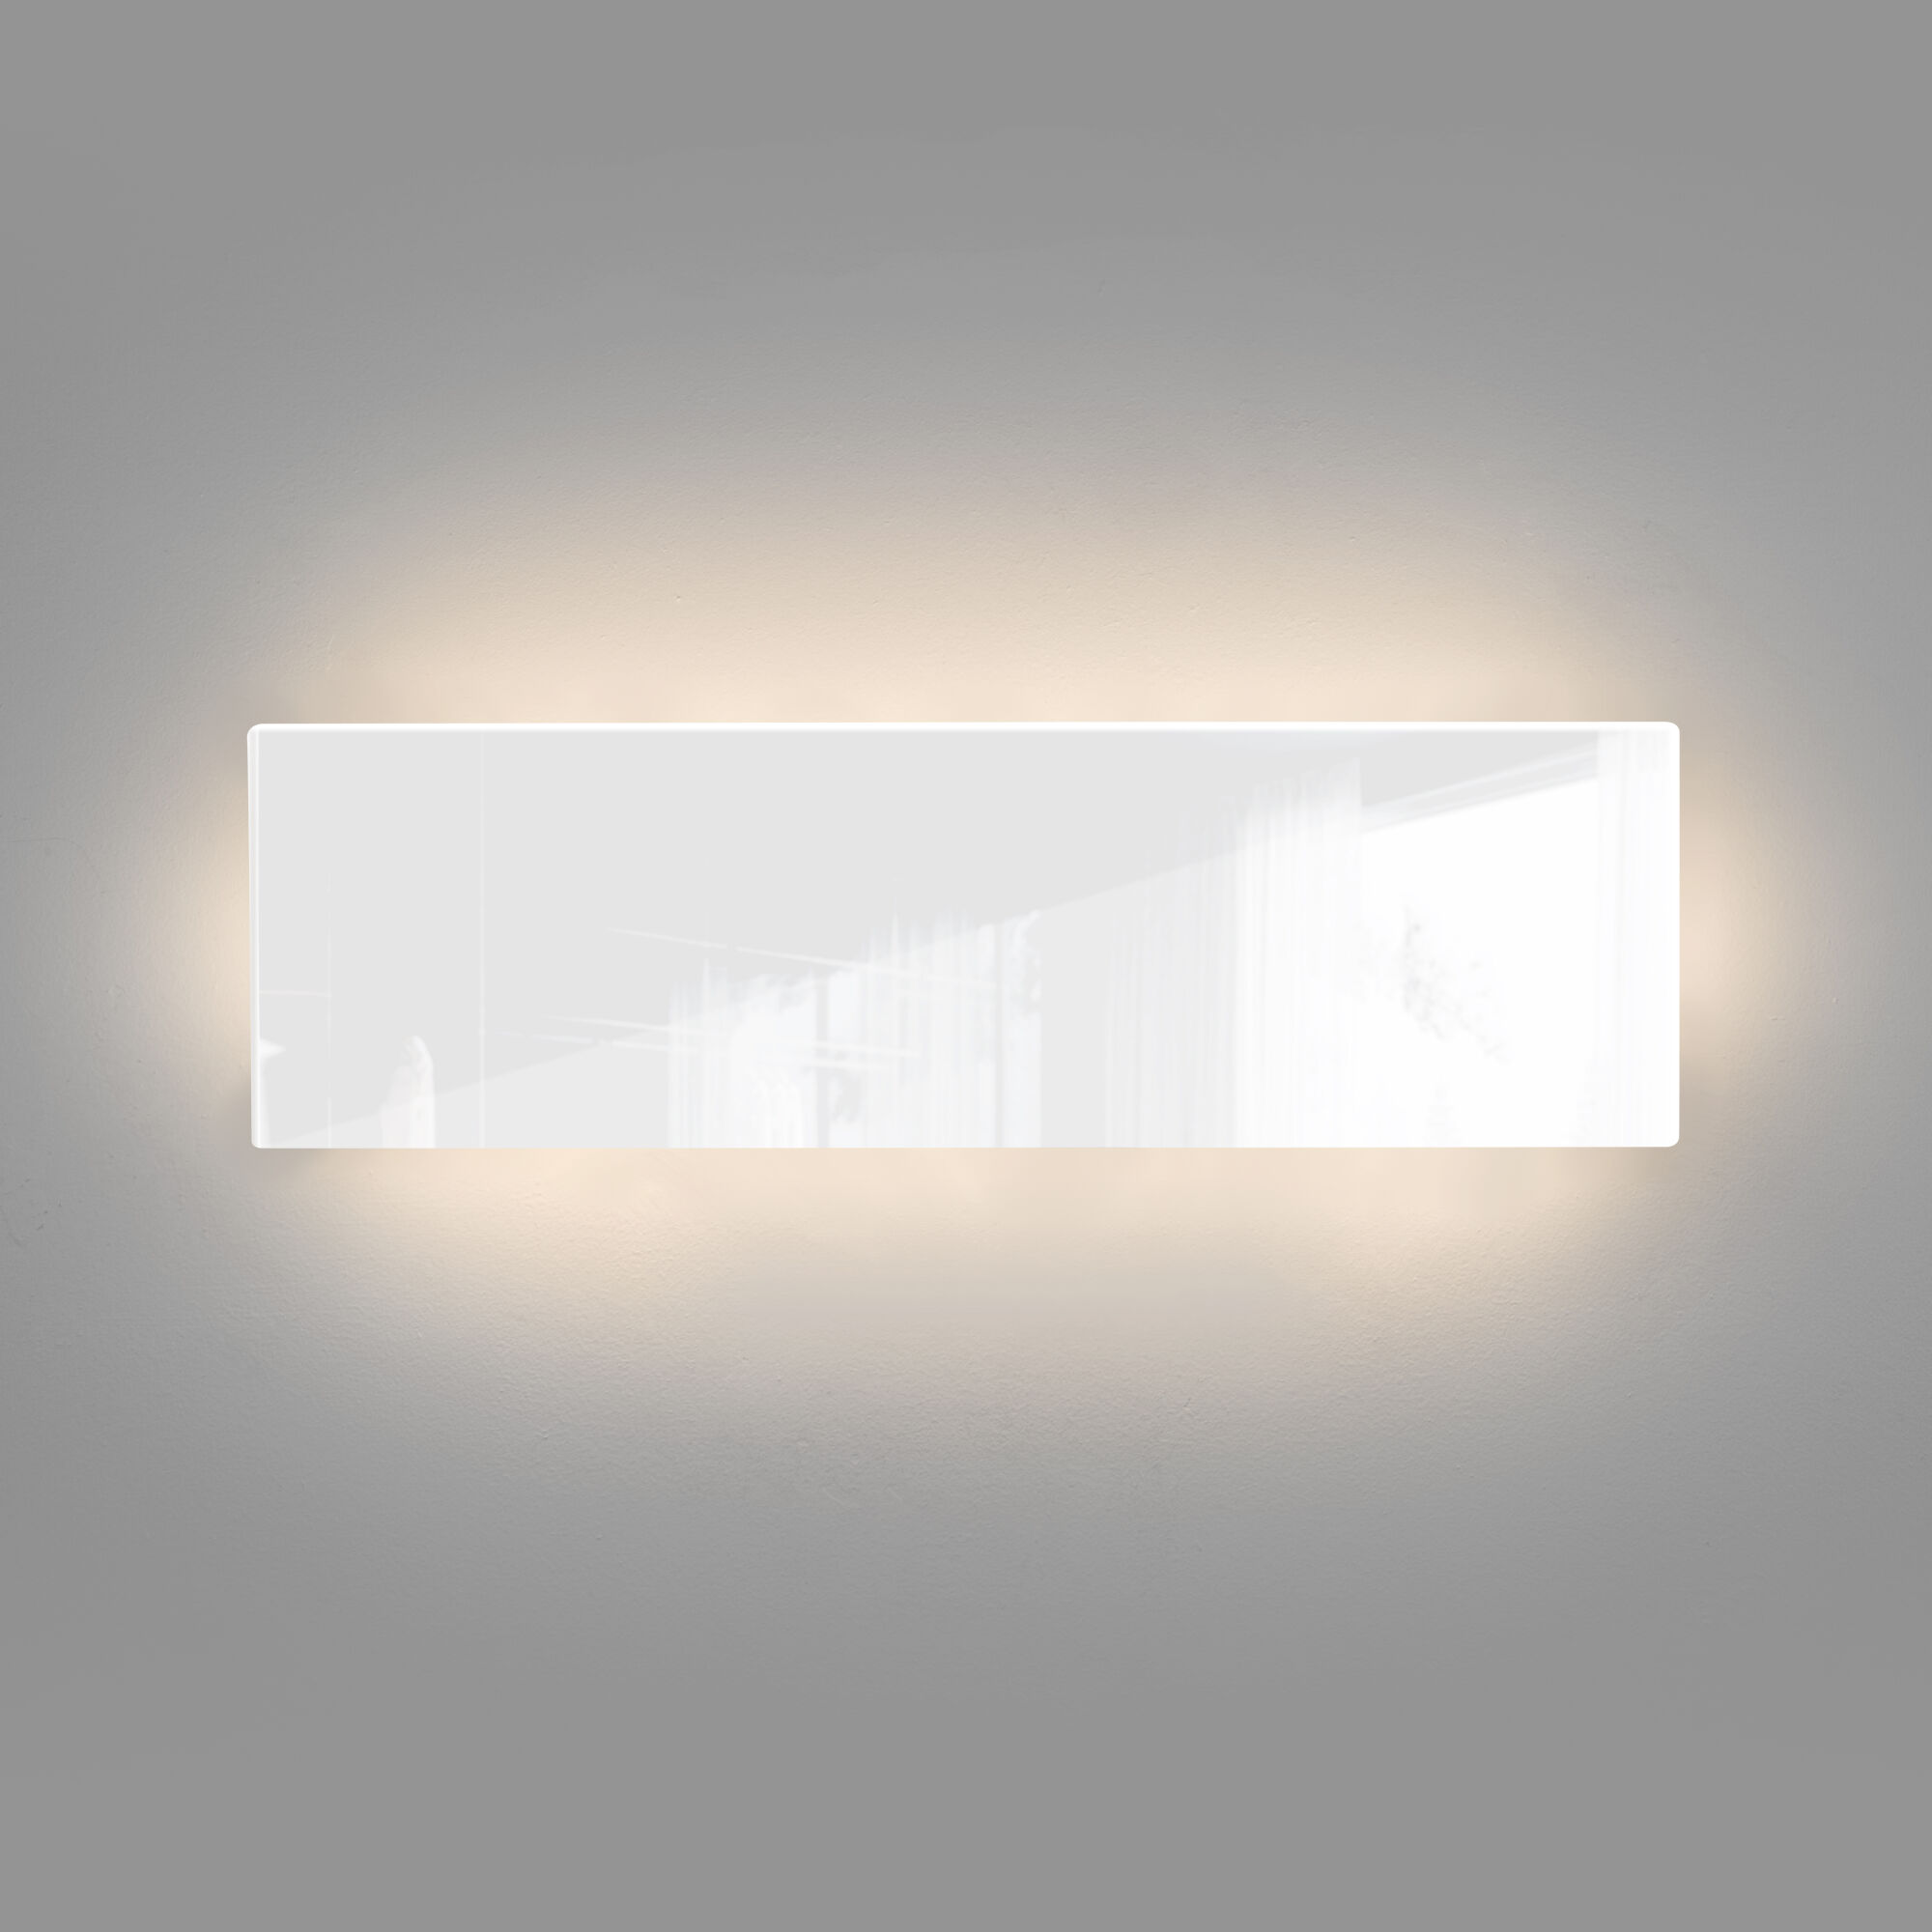 Светильник настенный светодиодный Favorit Light MRL LED 1125 белый